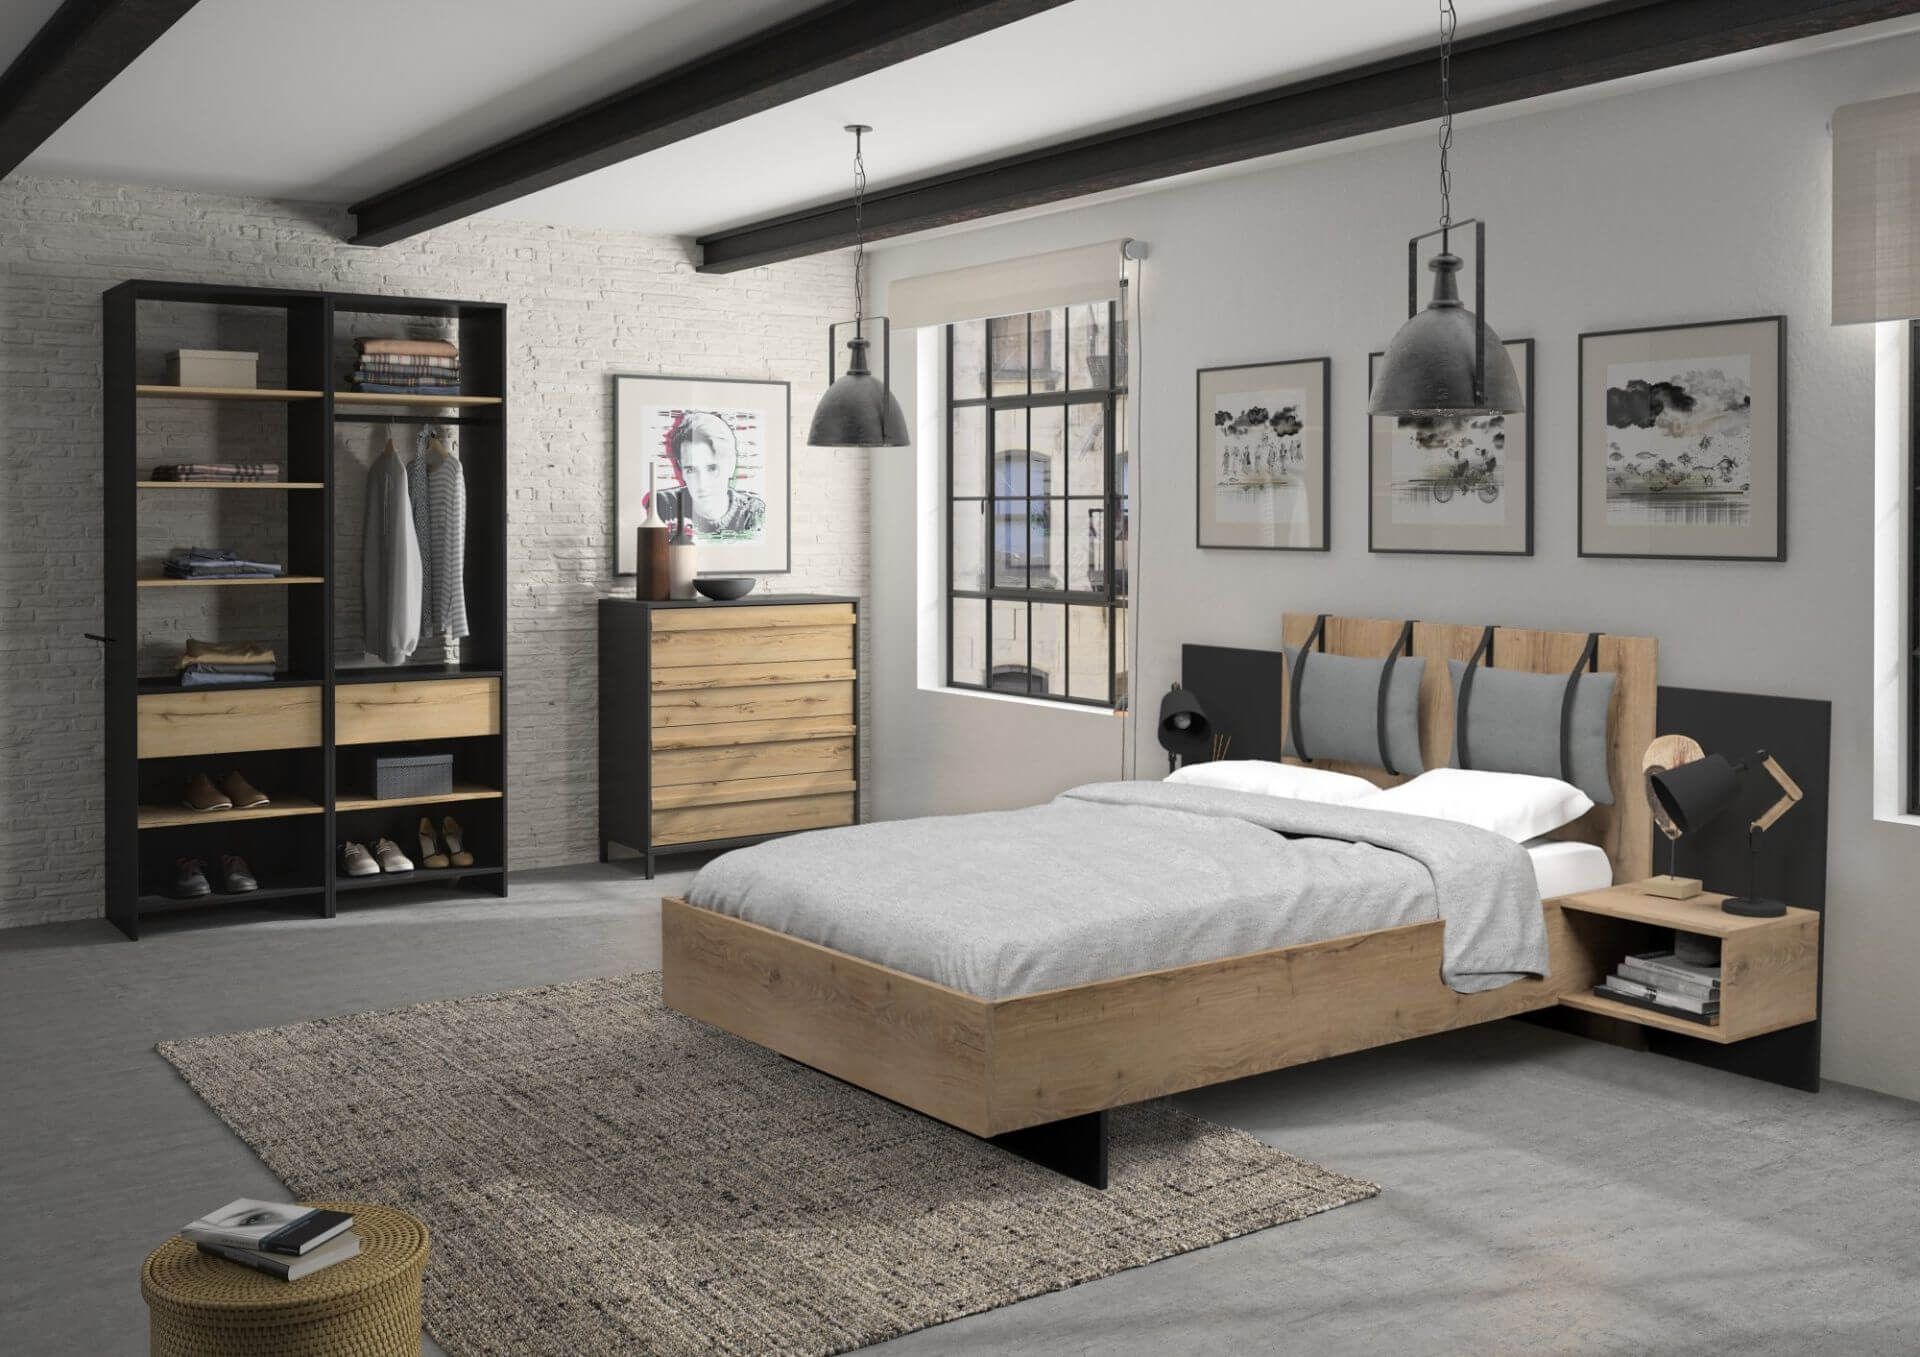 Chambre à coucher 4 pièces MIMIZAN au look industriel moderne, imitation bois de chêne Helvezia combiné avec des contrastes en noir